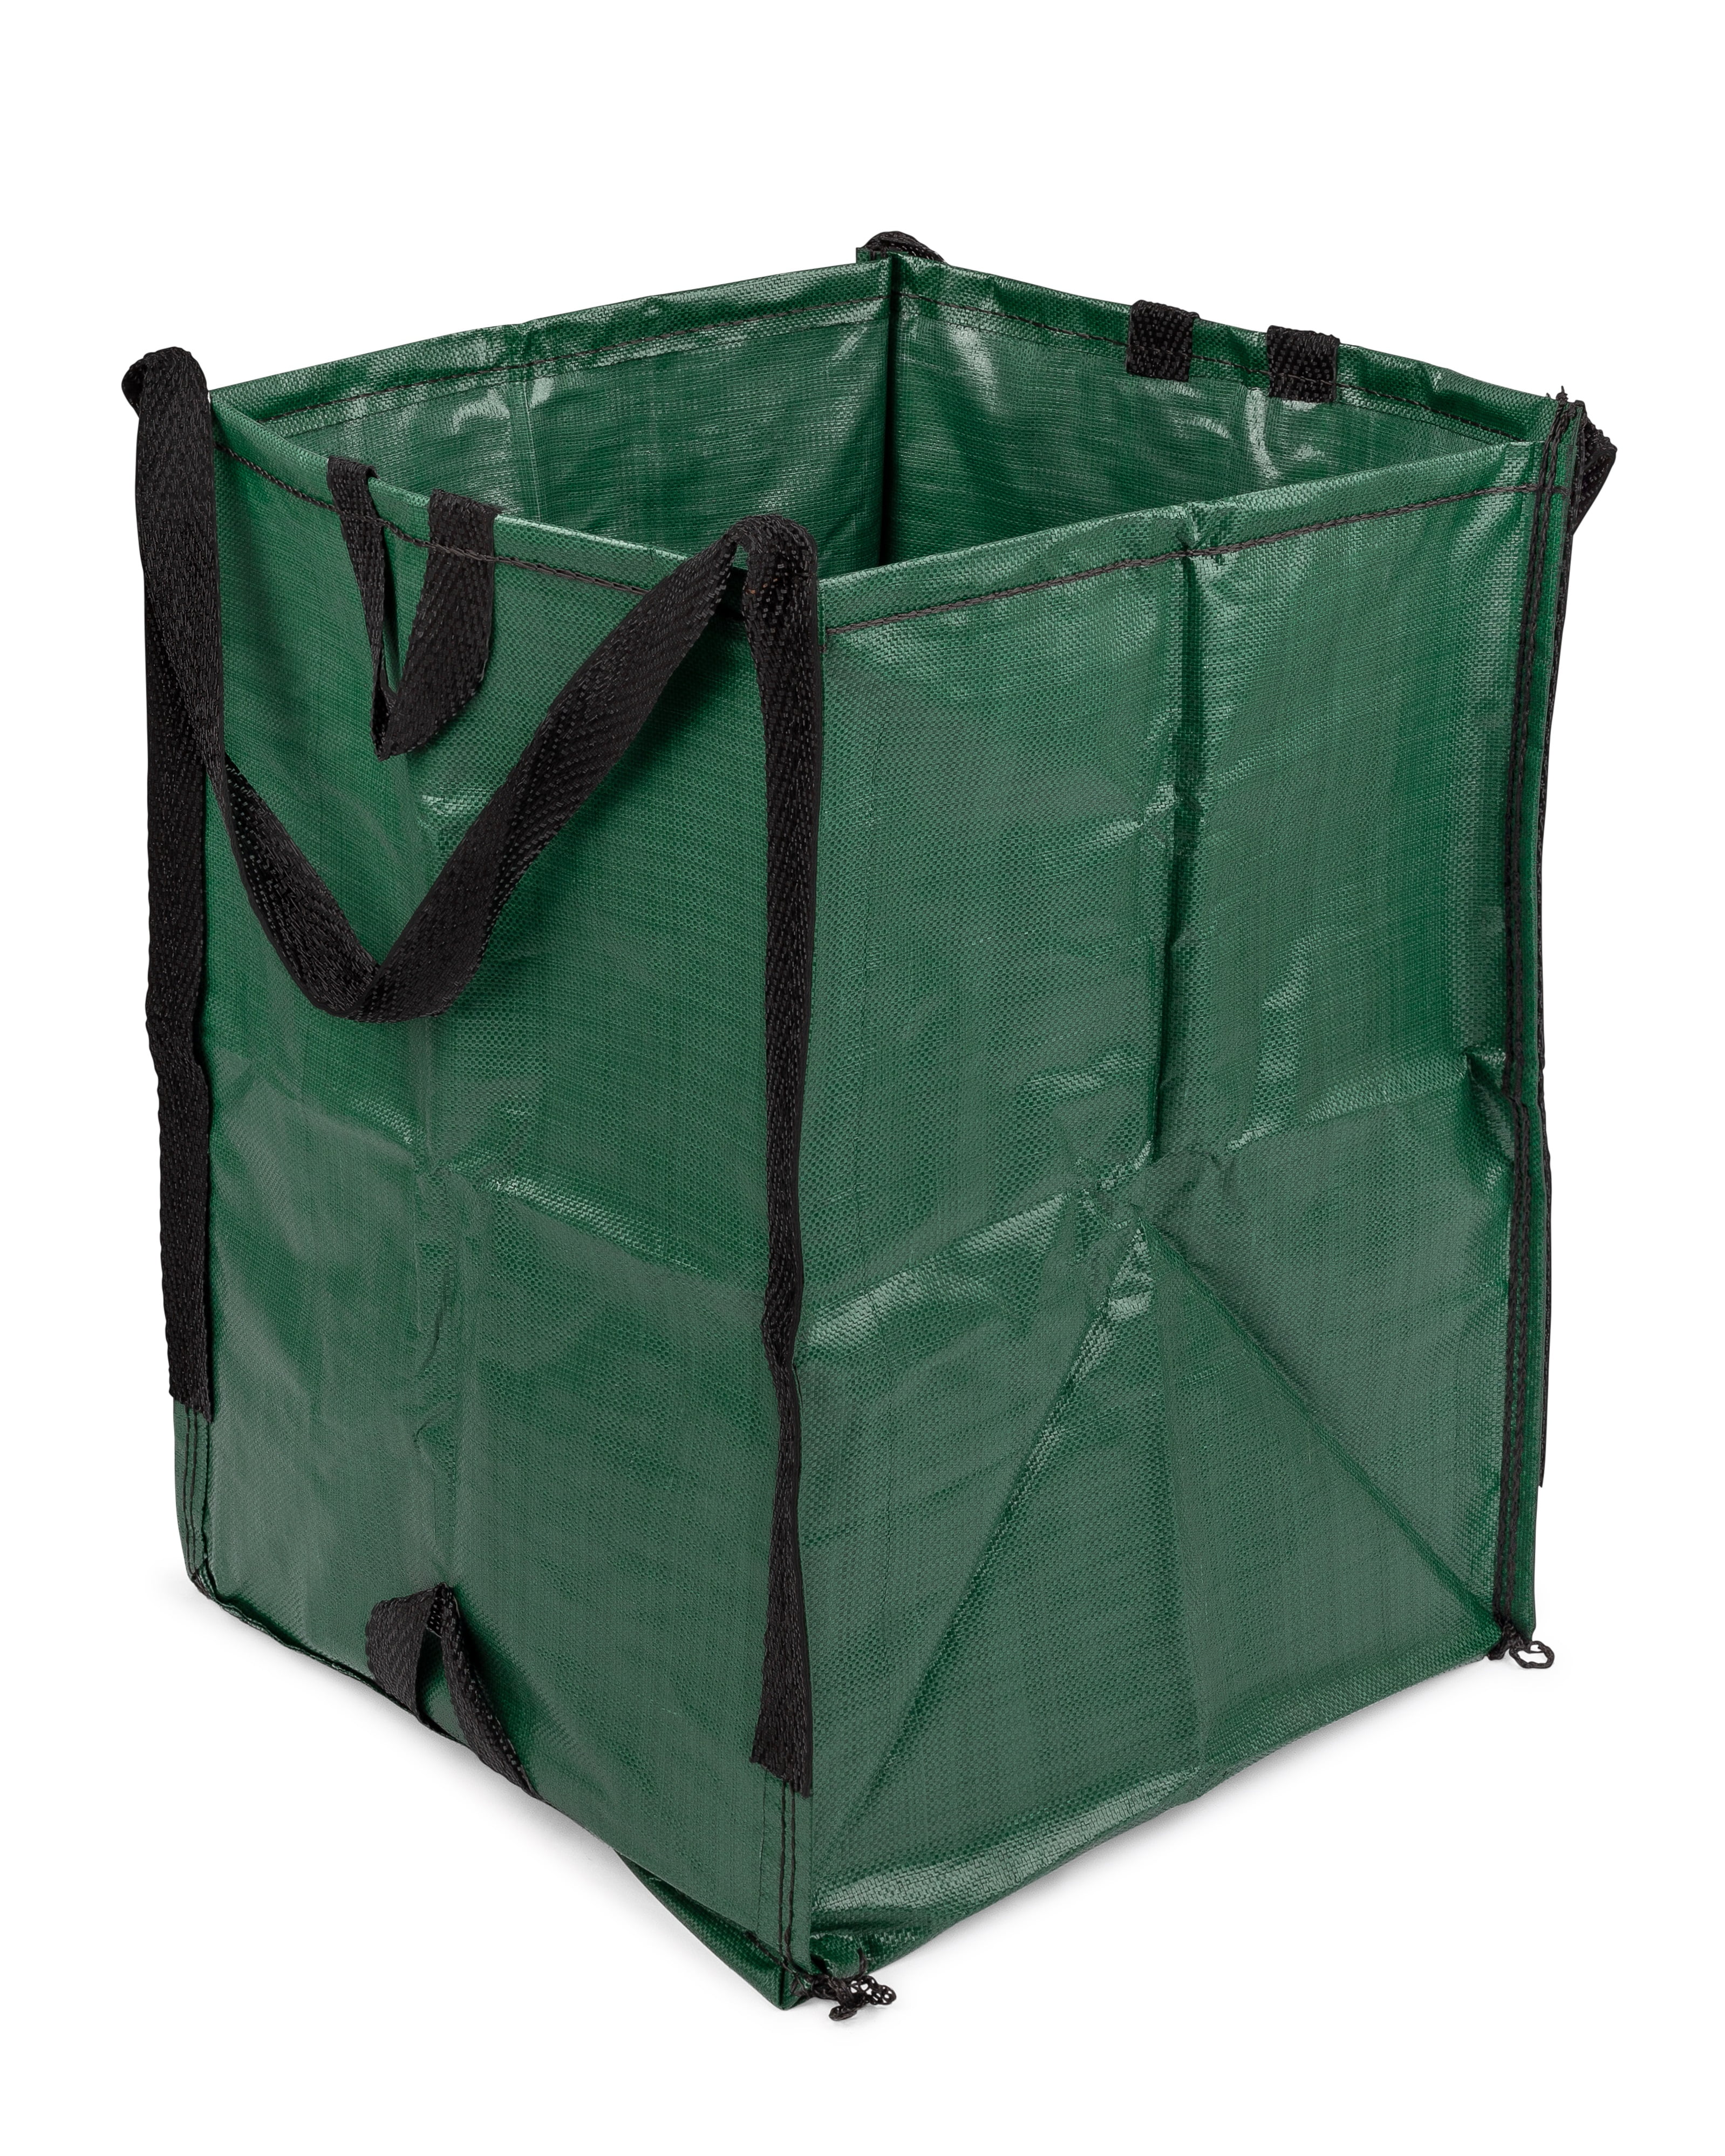 UQM Leaf Collector, Portable Pop Up Leaf Bags, Foldable Leaf Pick